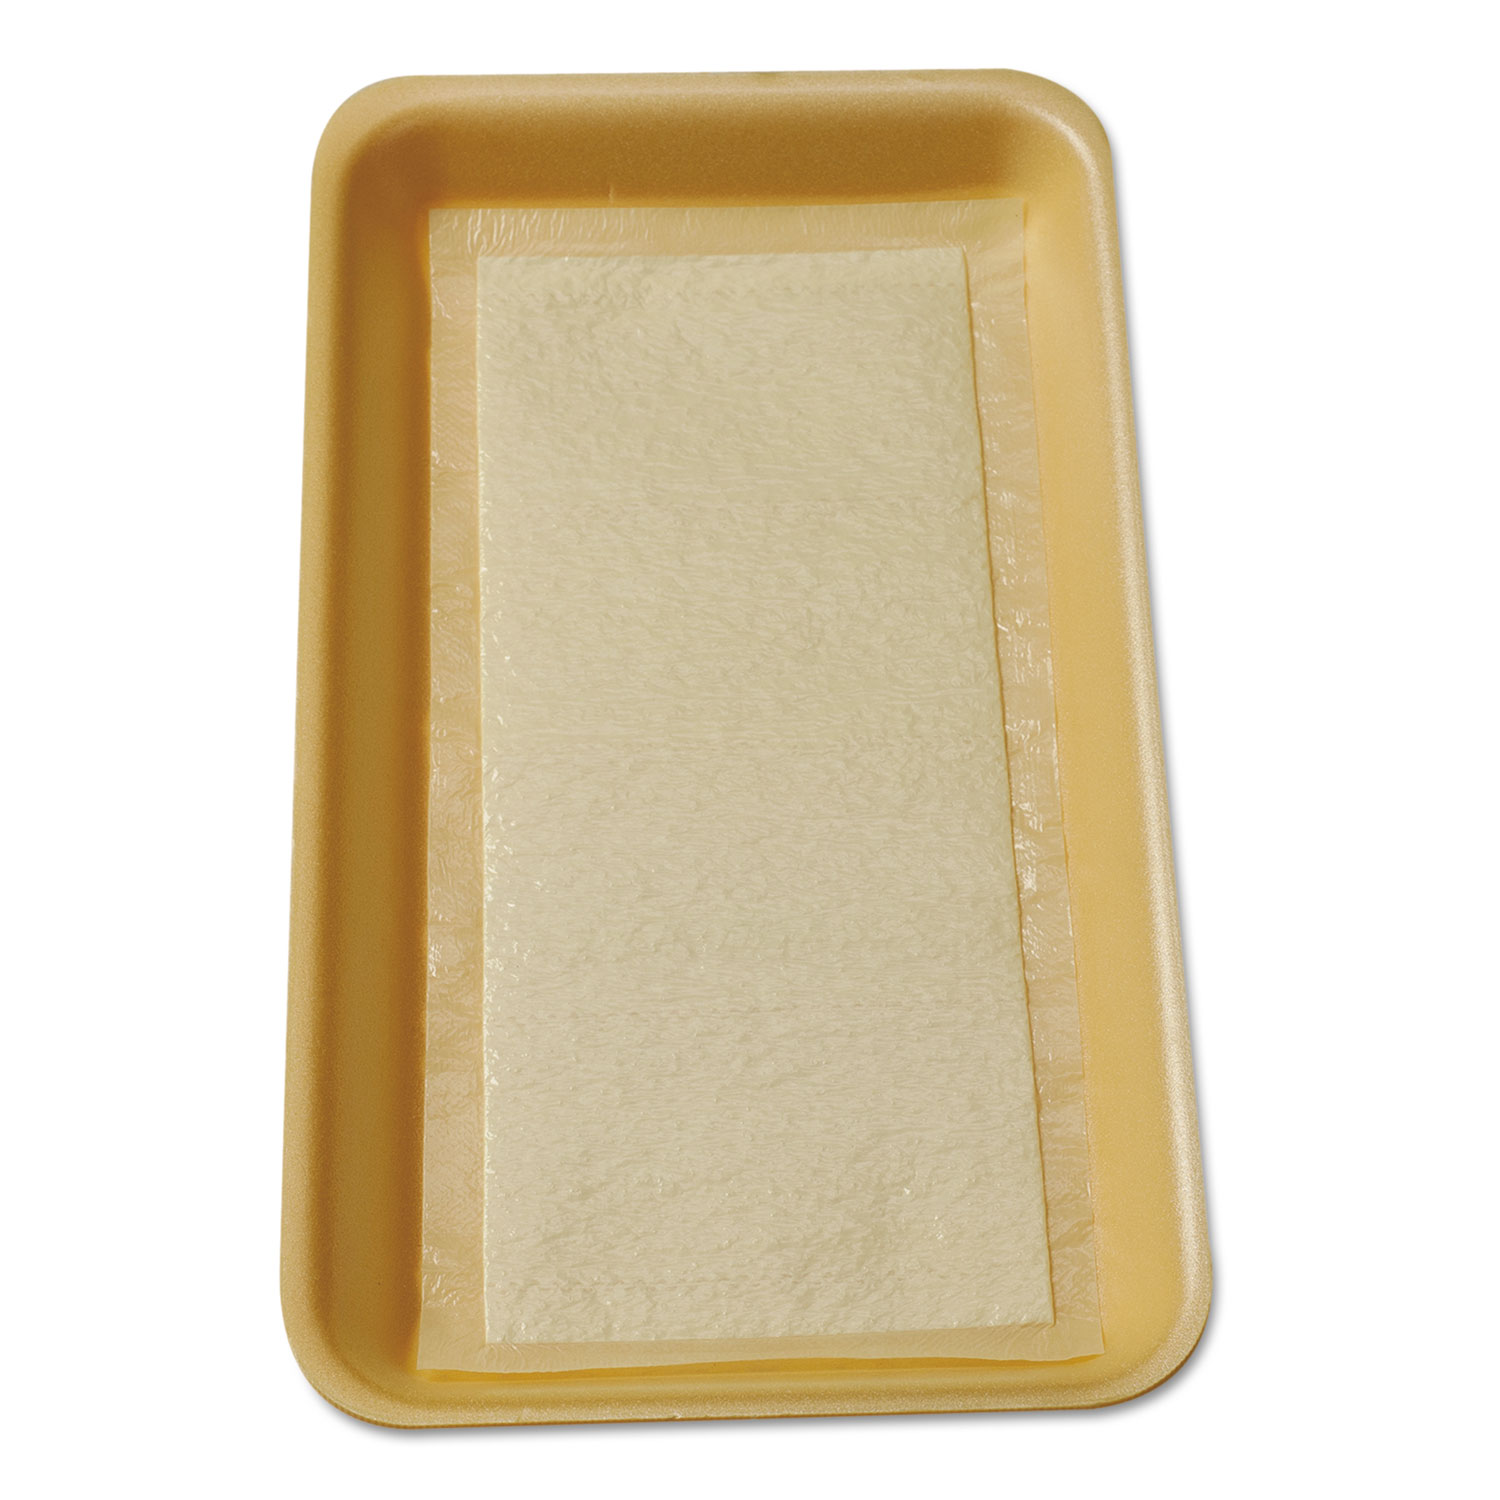  International Tray Pads TA1341108 Meat Tray Pads, 6w x 4 1/2d, White/Yellow, 1000/Carton (ITRTA1341108) 